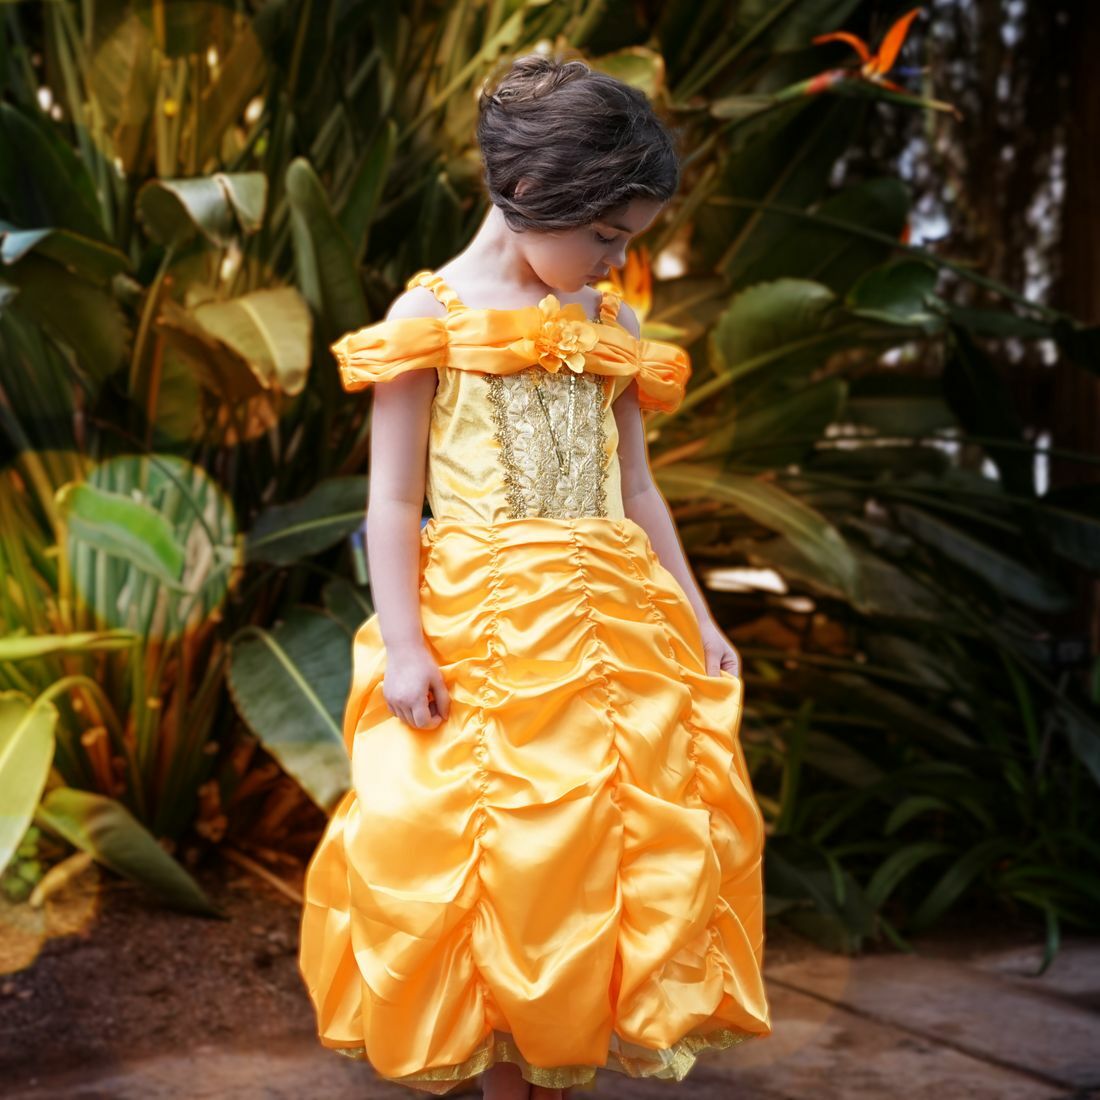 4 Halloween Princess Dresses That Bring Royal Dreams to Life